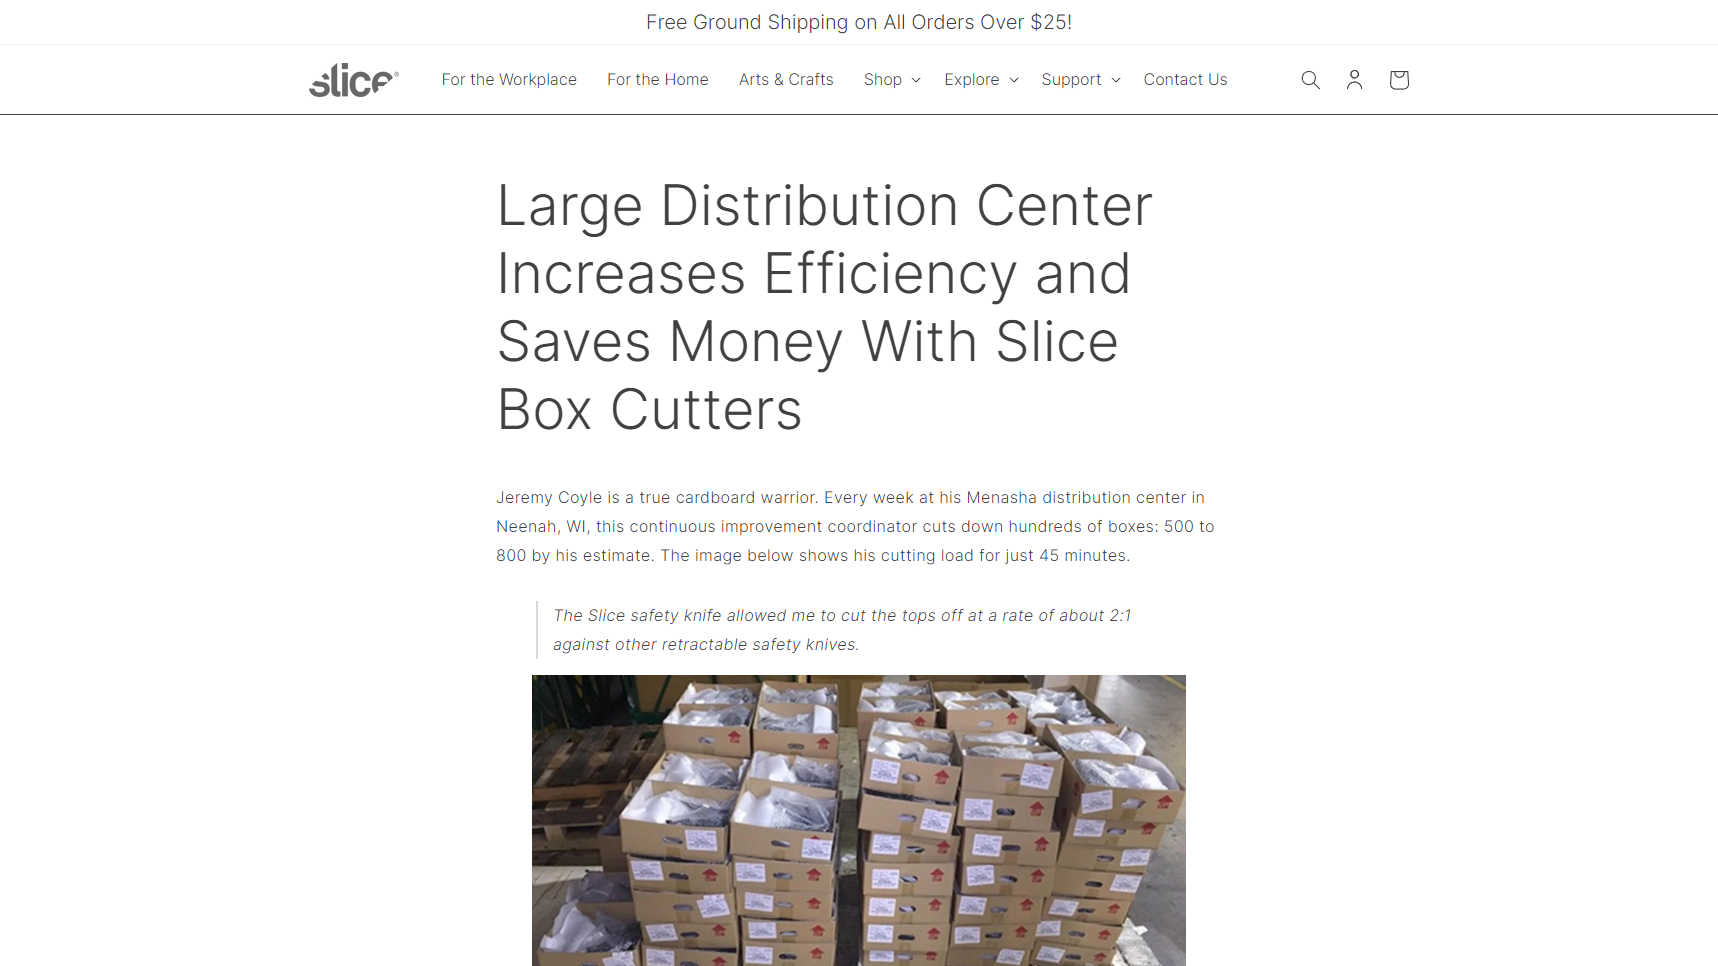 Slice, Inc. - Box Cutter Manufacturer